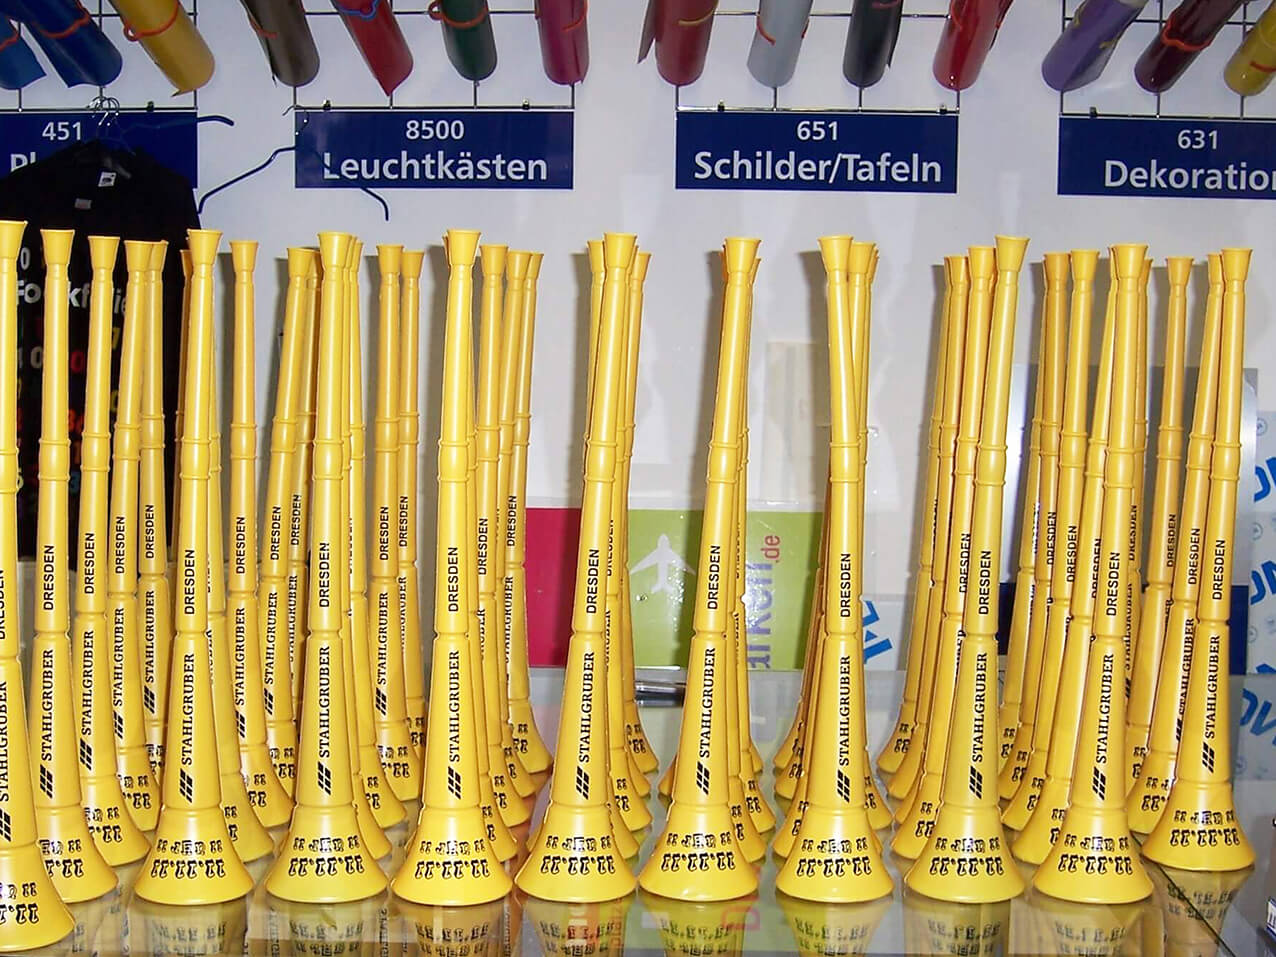 https://wegaswerbung.de/wp-content/uploads/2019/03/521-Troete-Tute-Vuvuzela-Fussball-Sport-Event.jpg